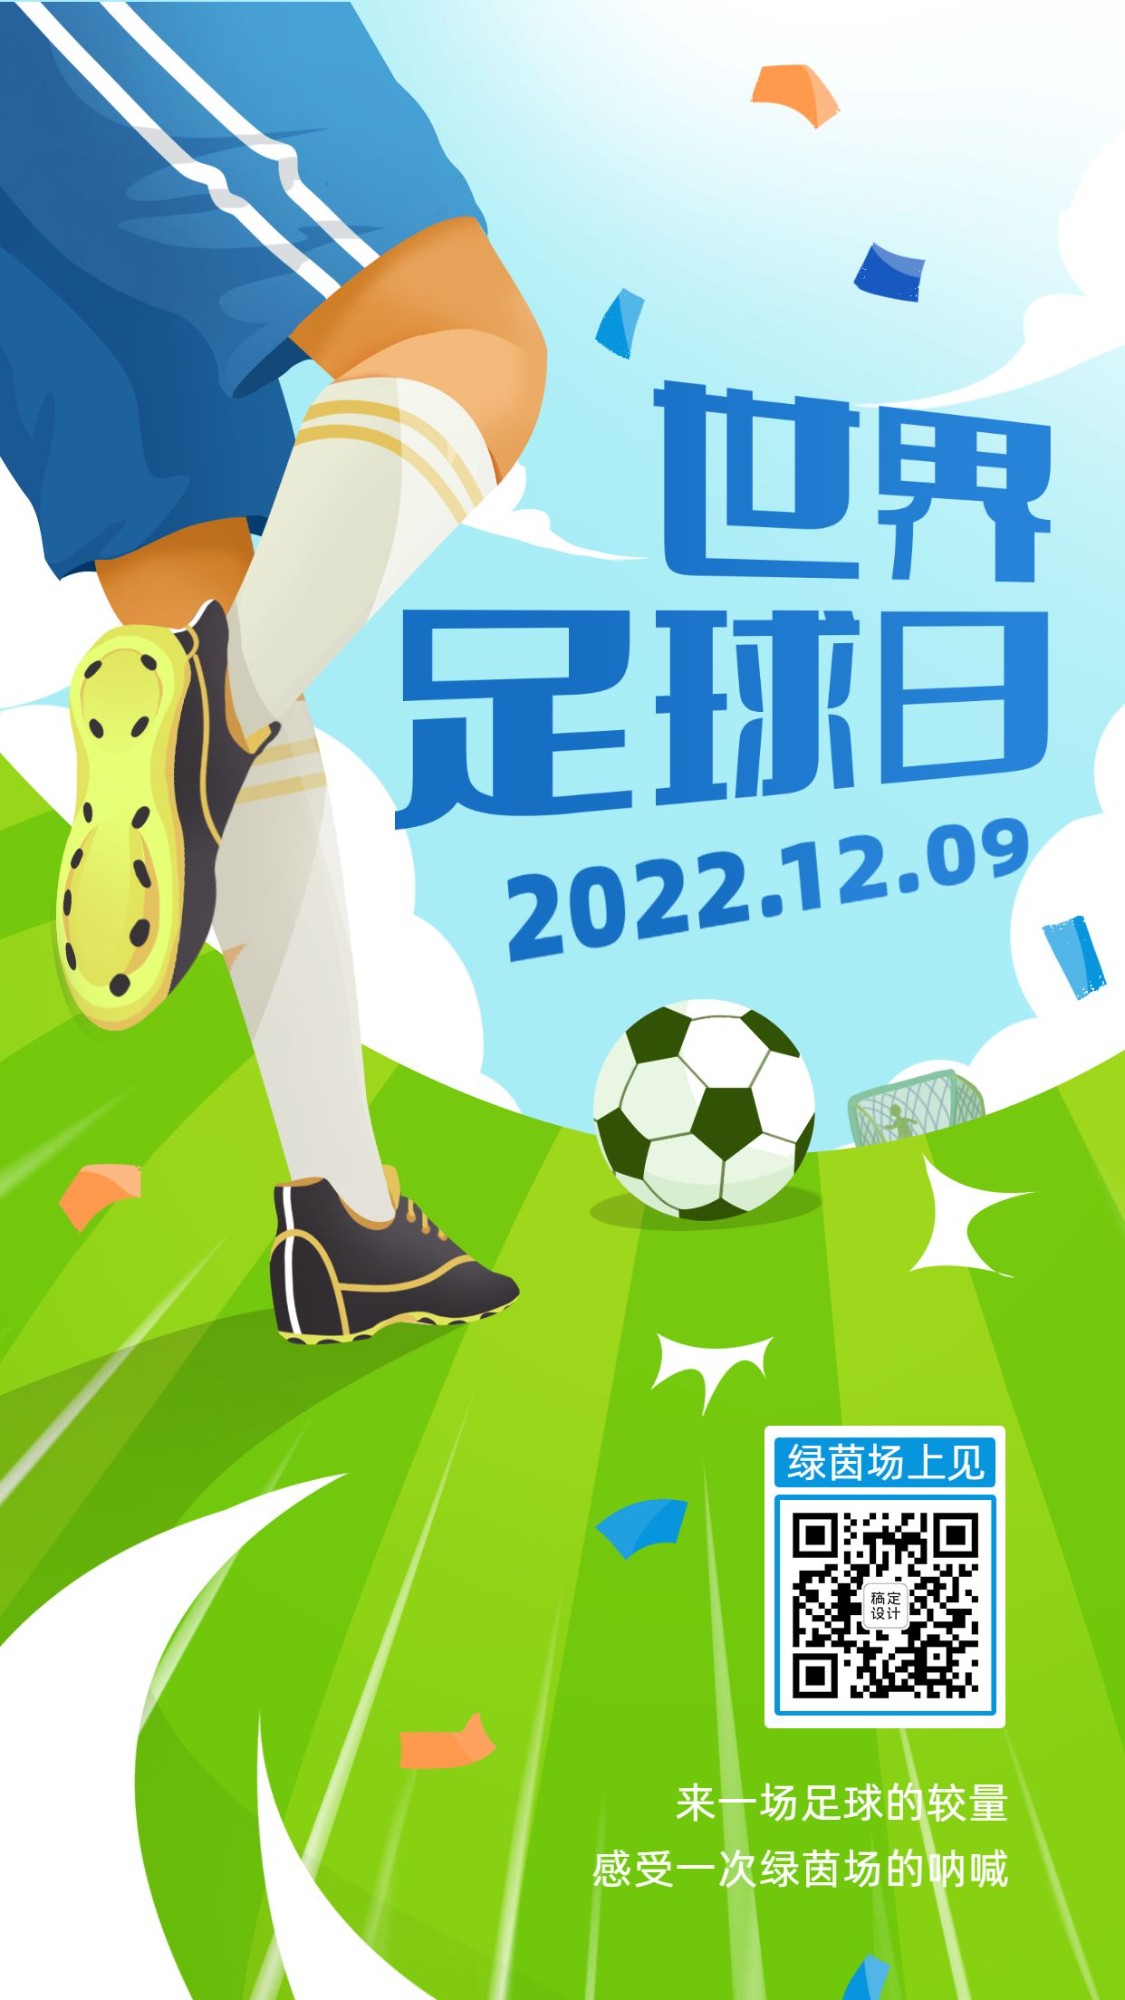 世界足球日体育运动手机海报